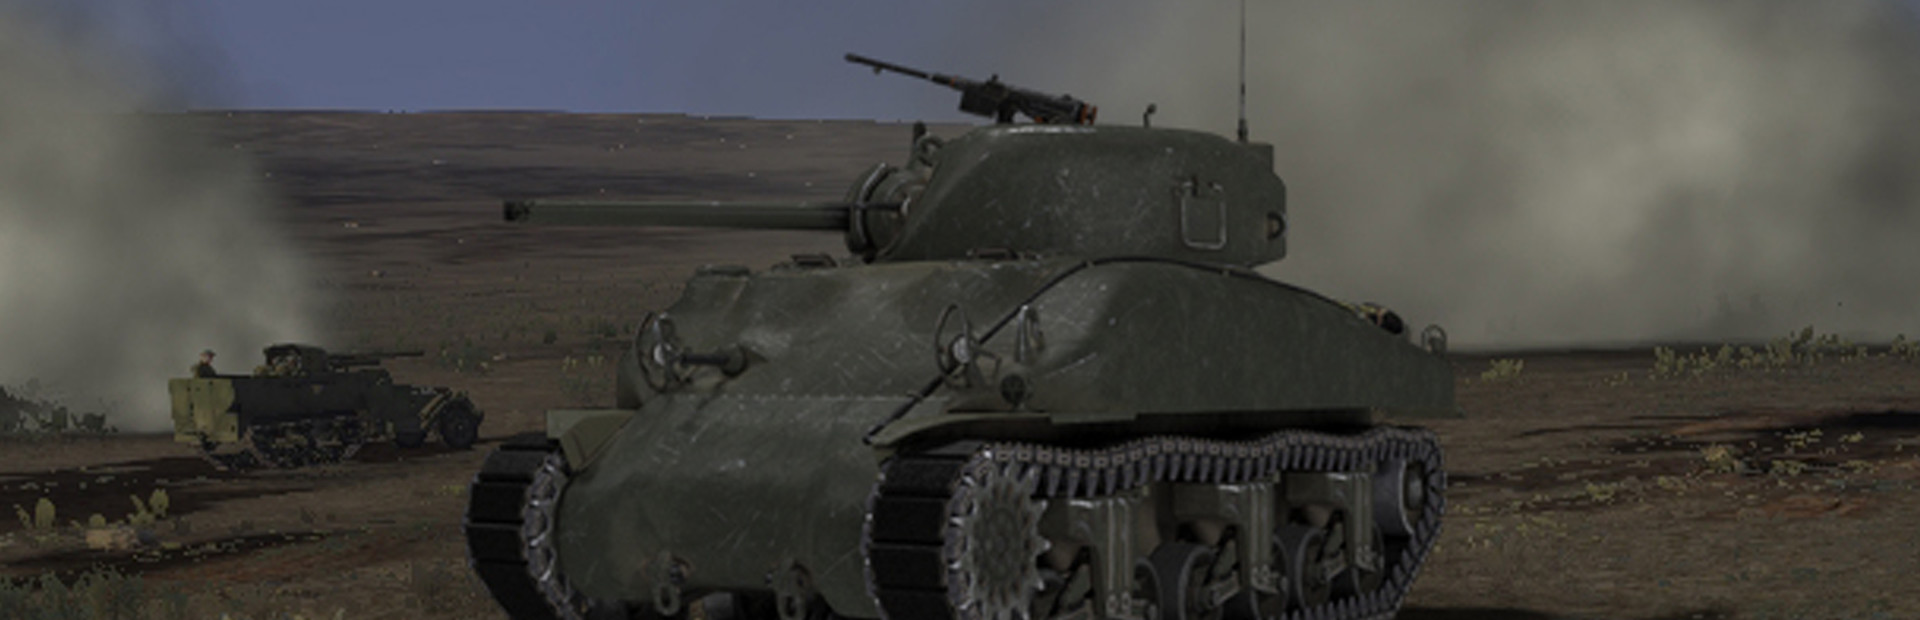 Tank Warfare: Tunisia 1943 cover image